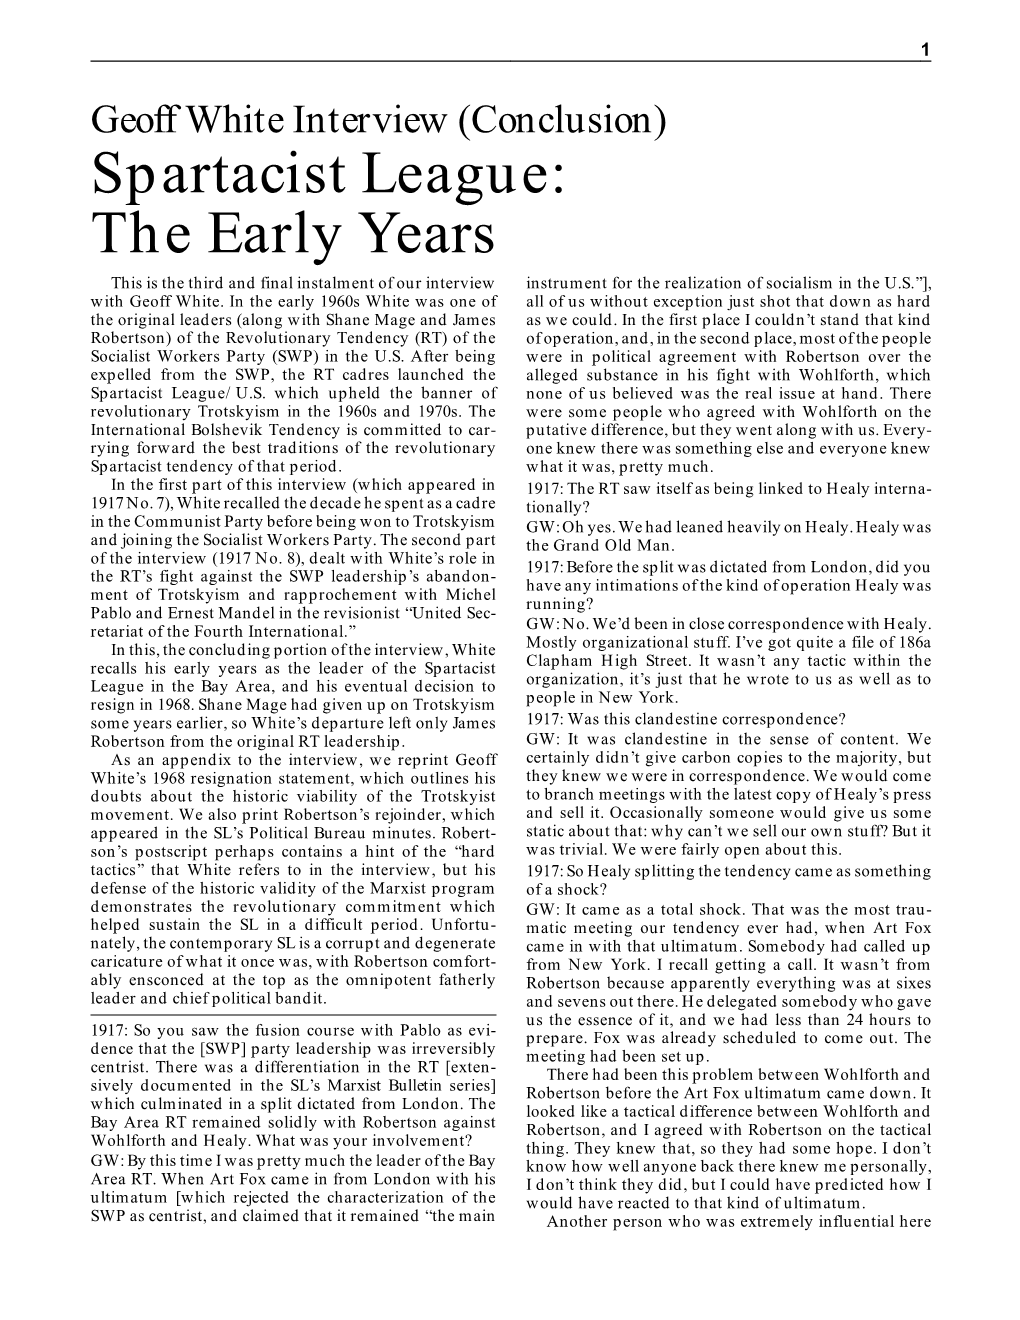 Spartacist League